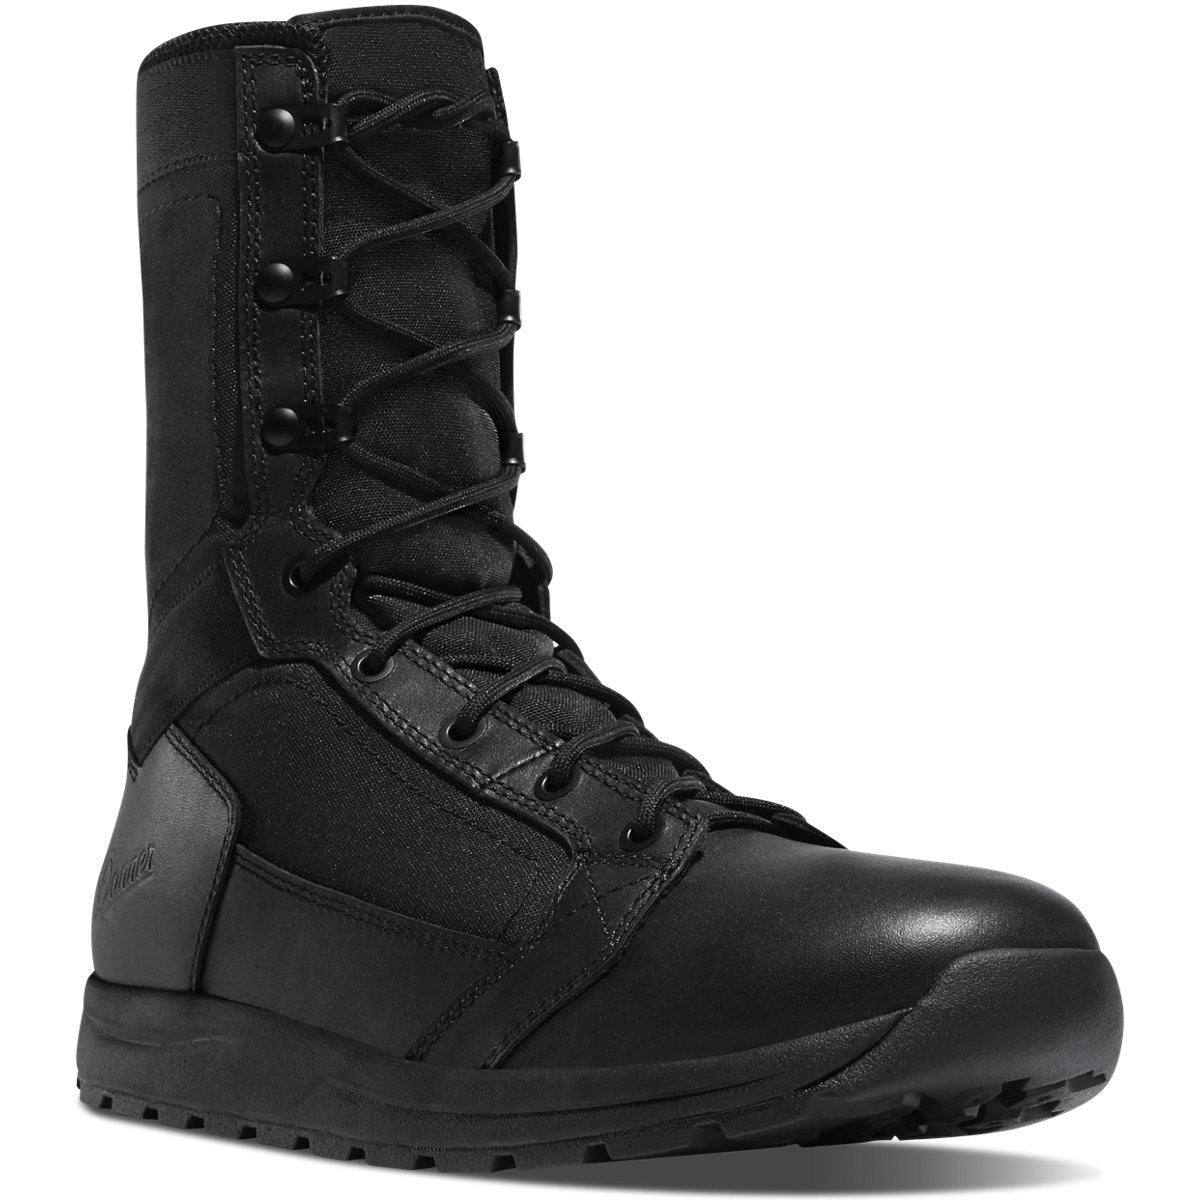 Danner Men's Tachyon 8" Duty Boot -Black- 50124  - Overlook Boots